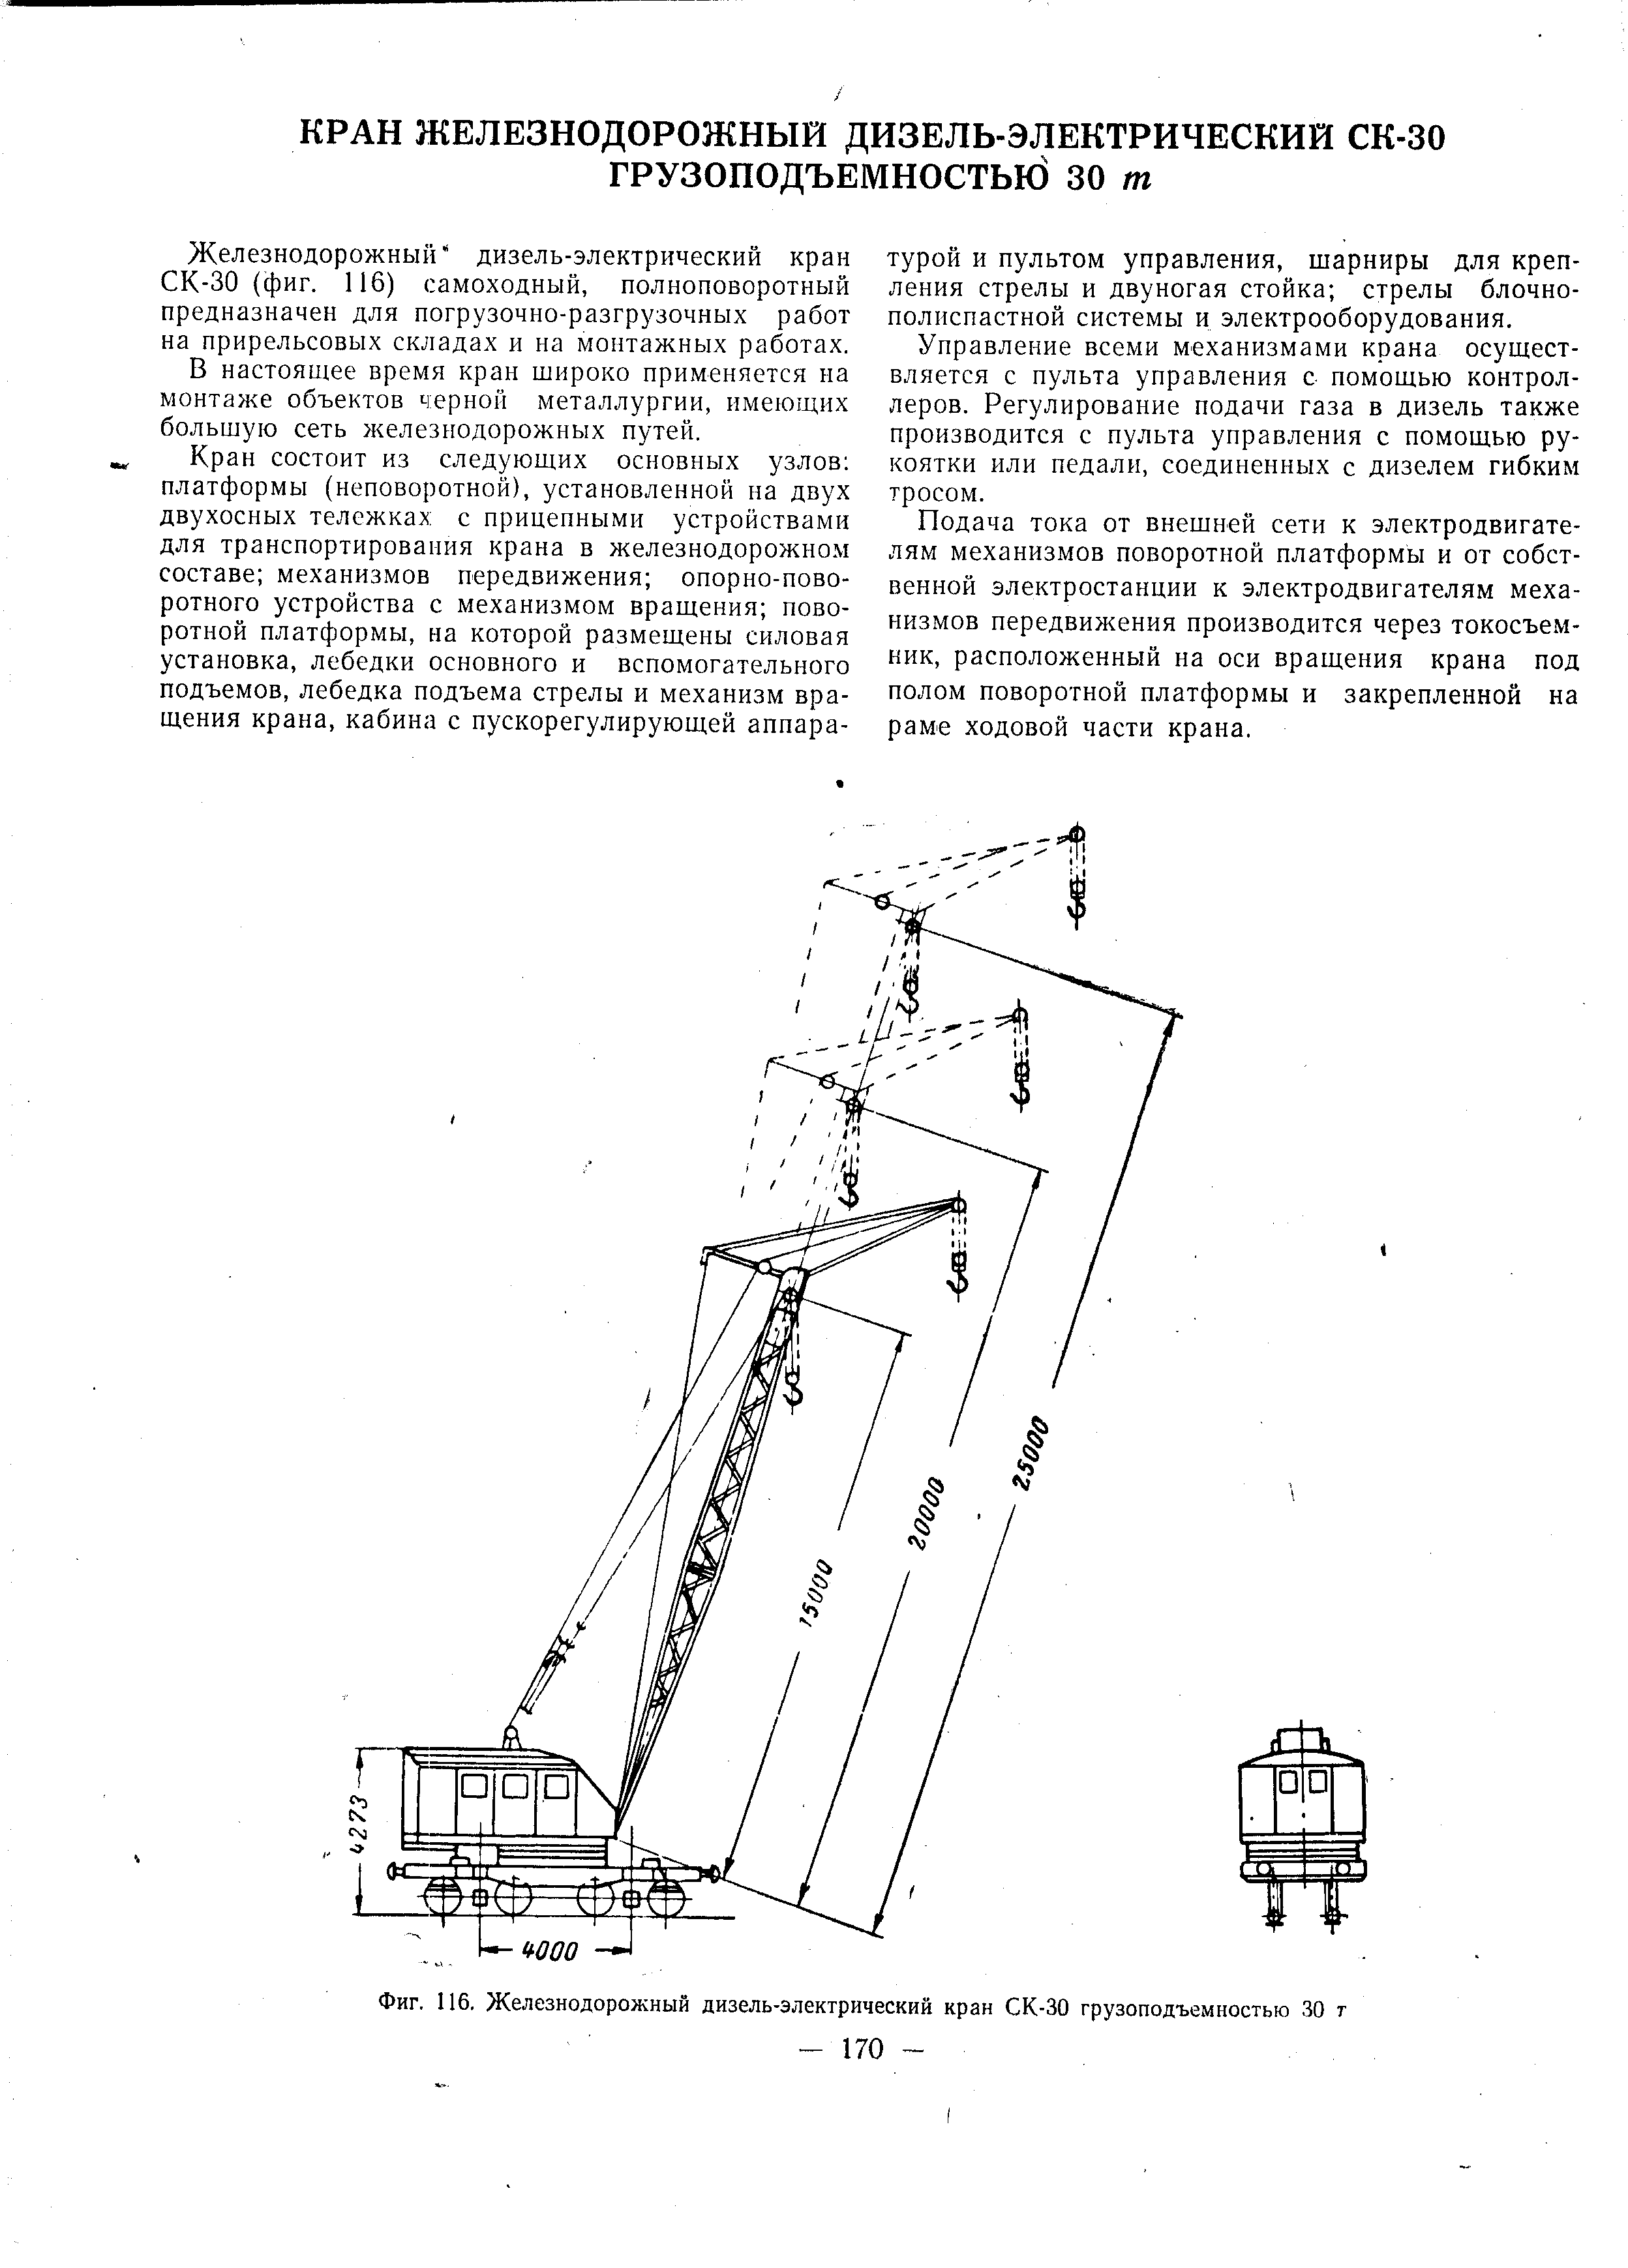 Фиг. 116. Железнодорожный дизель-электрический кран СК-30 грузоподъемностью 30 т
